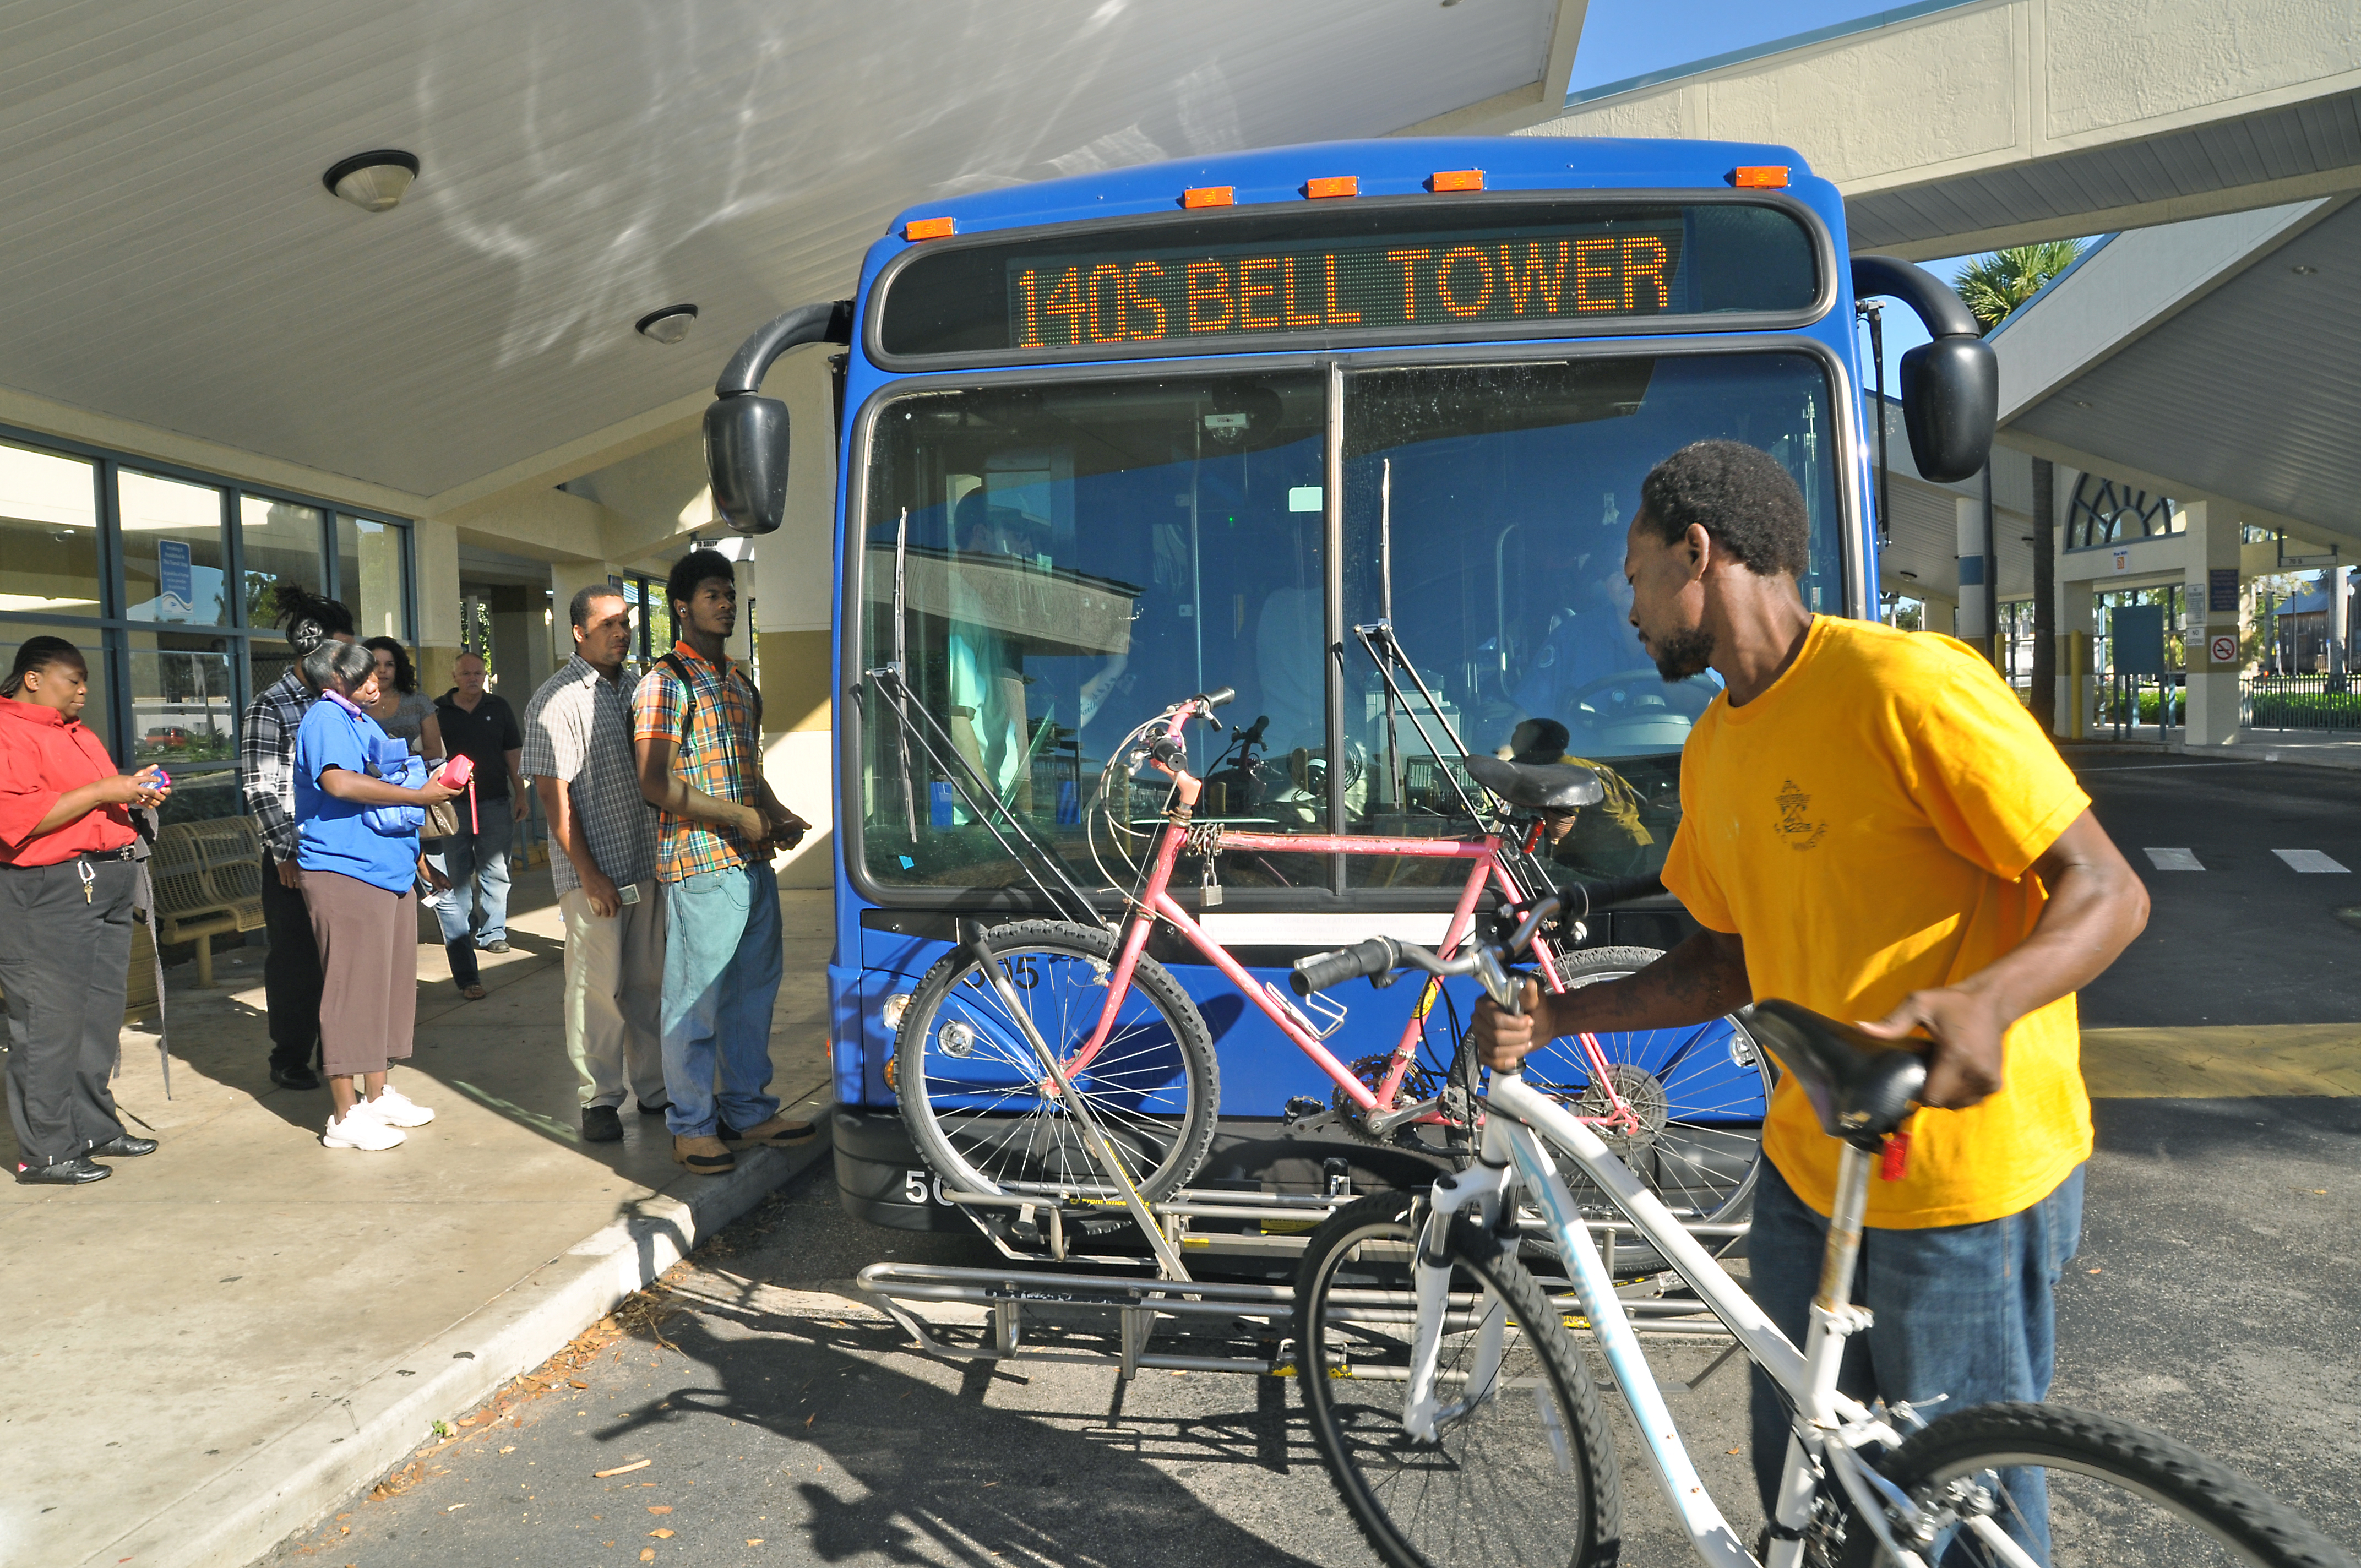 bell bike rack yellow